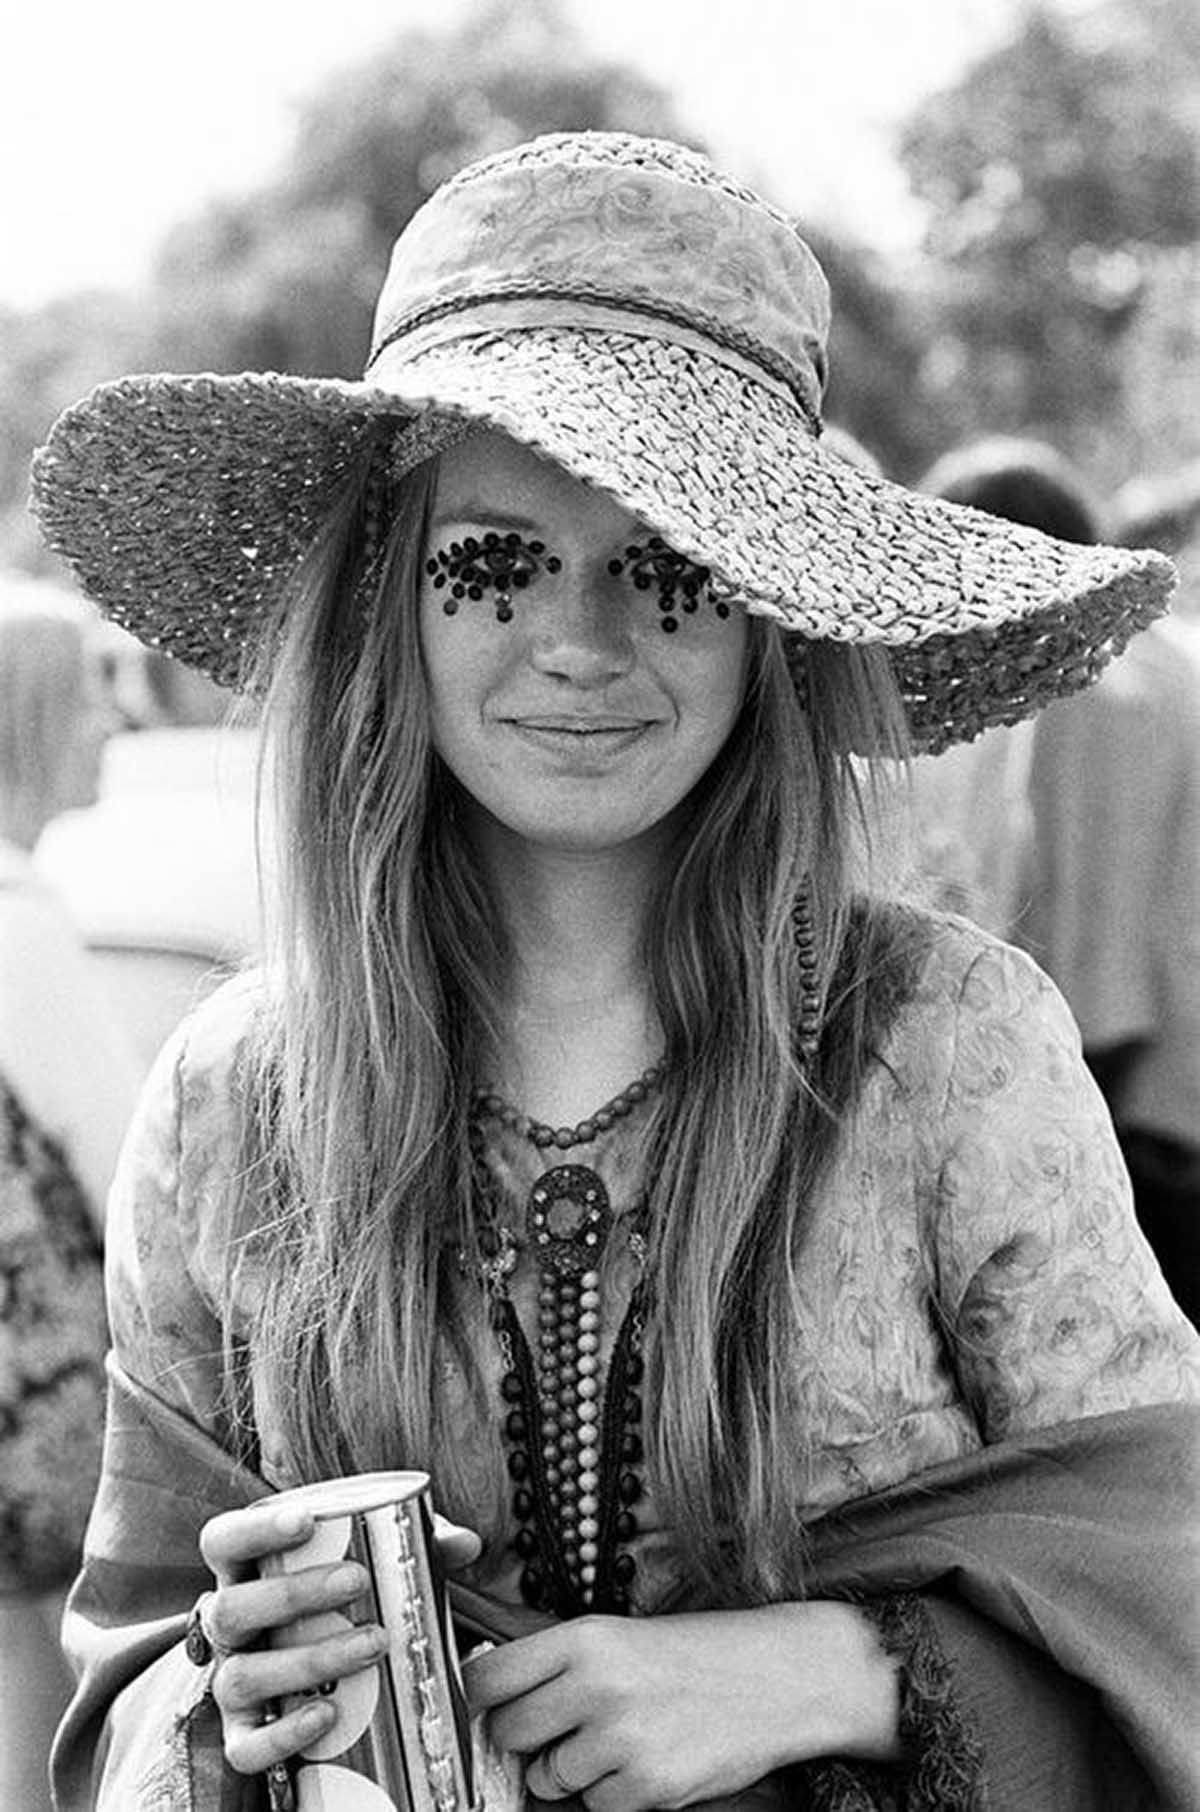 Fotos impressionantes retratam a moda rebelde de Woodstock em 1969 21